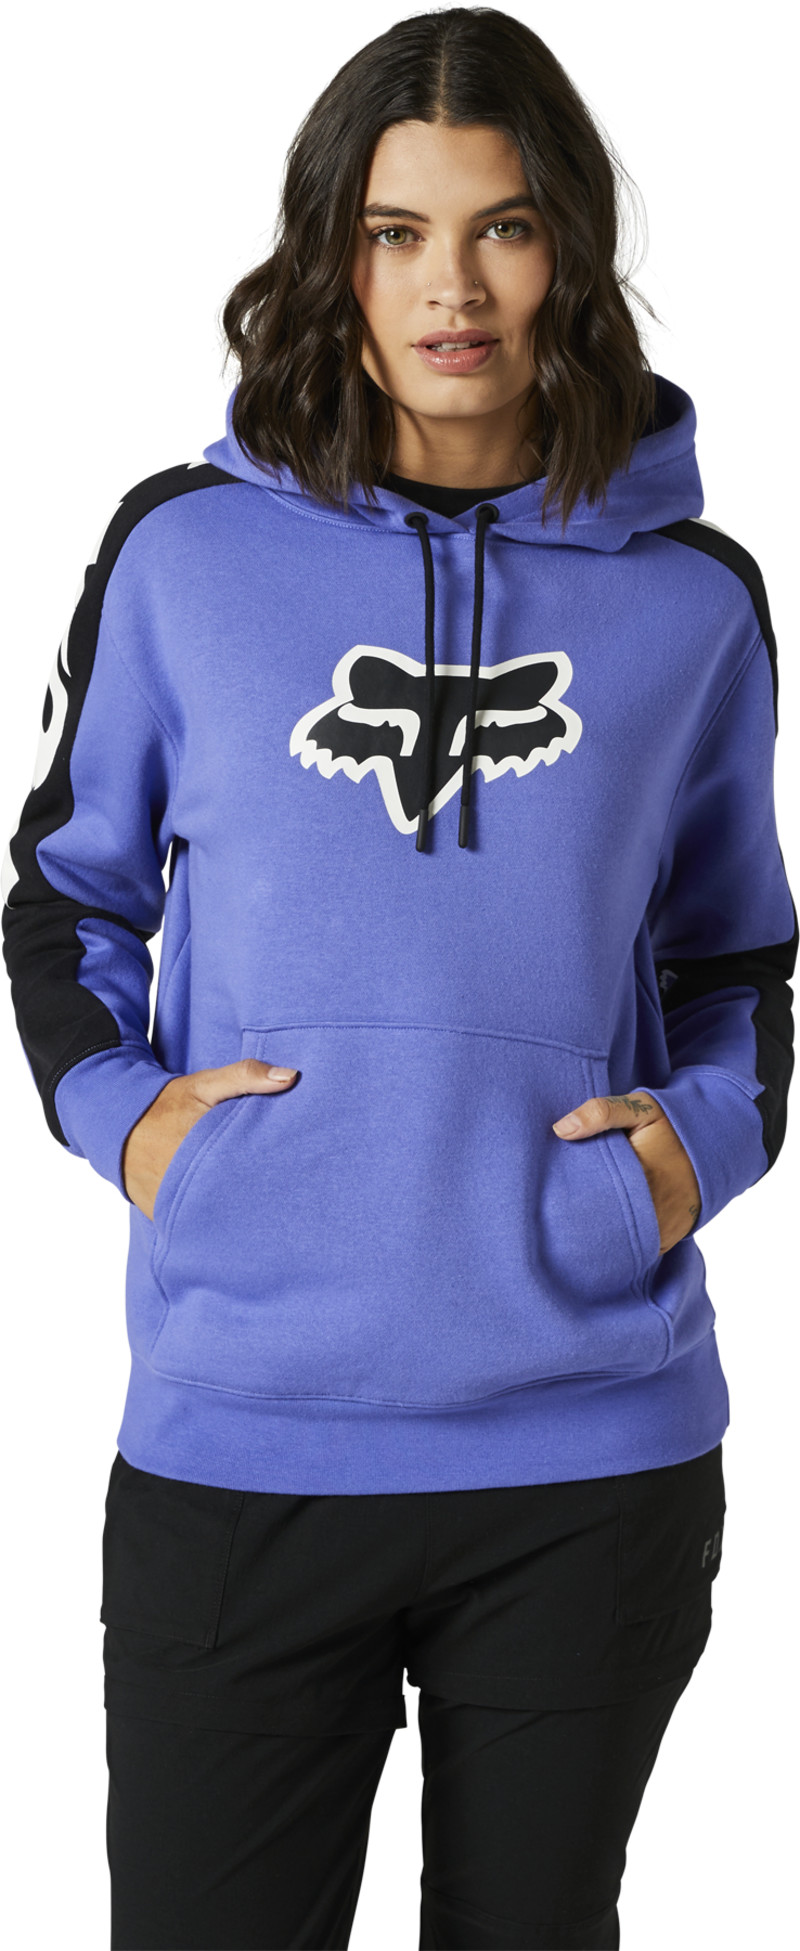 fox racing hoodies  karrera pullover hoodies - casual